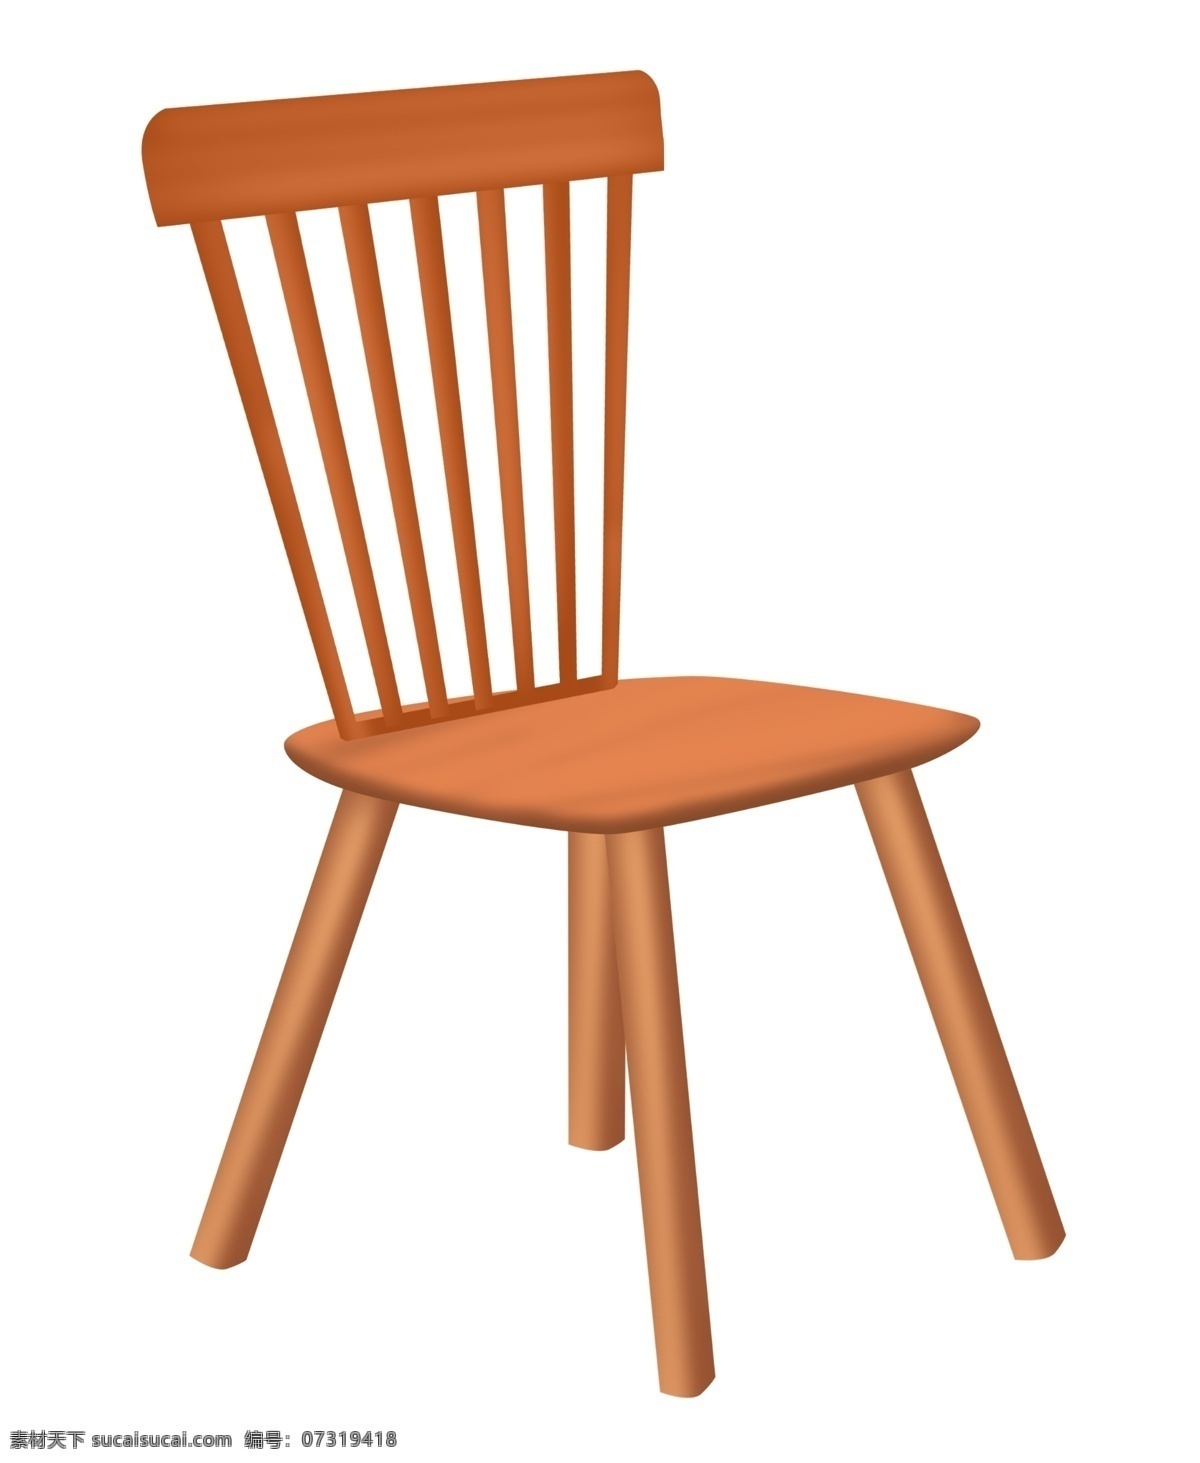 木头 椅子 家具 插画 木头的椅子 卡通插画 椅子插画 家具插画 家具椅子 凳子座位 漂亮的椅子